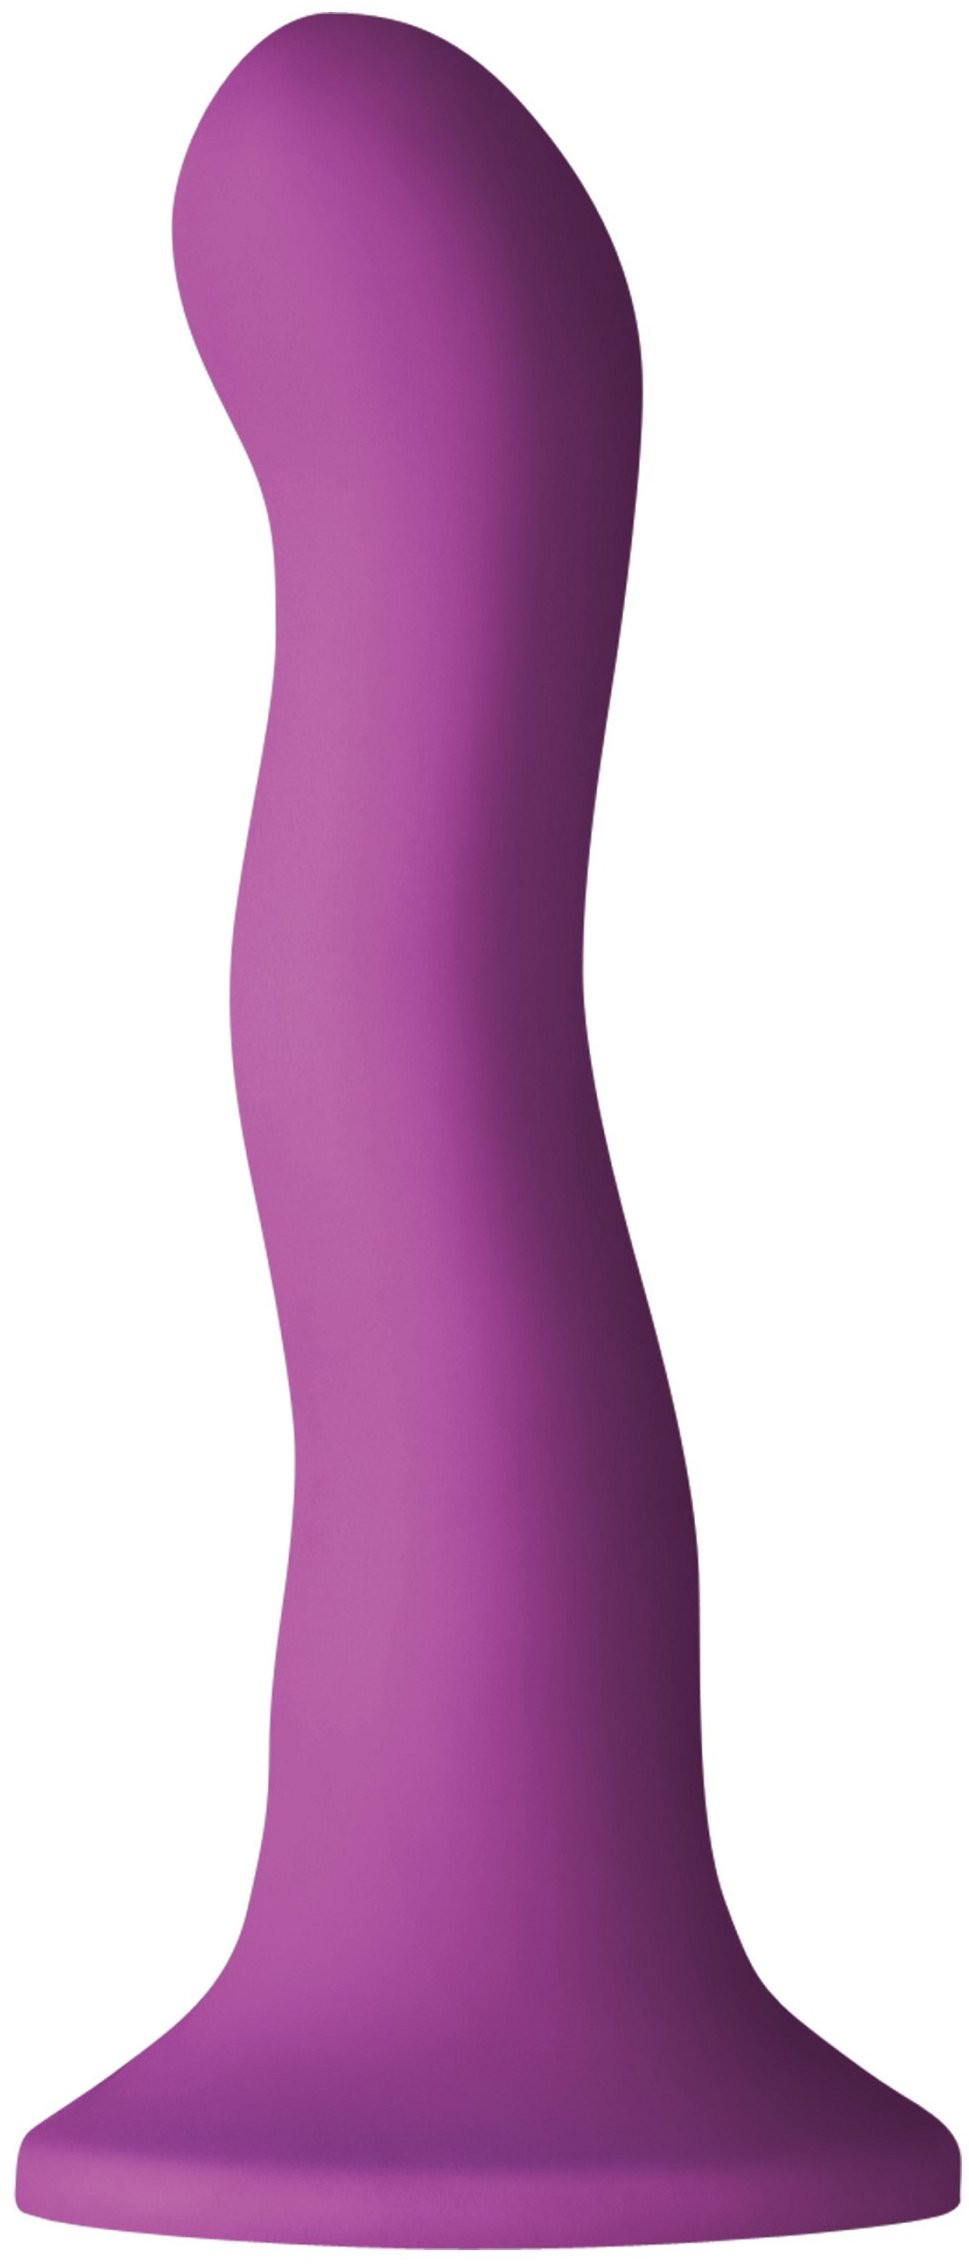 Dildo s prísavkou Purple Wave (19 cm)